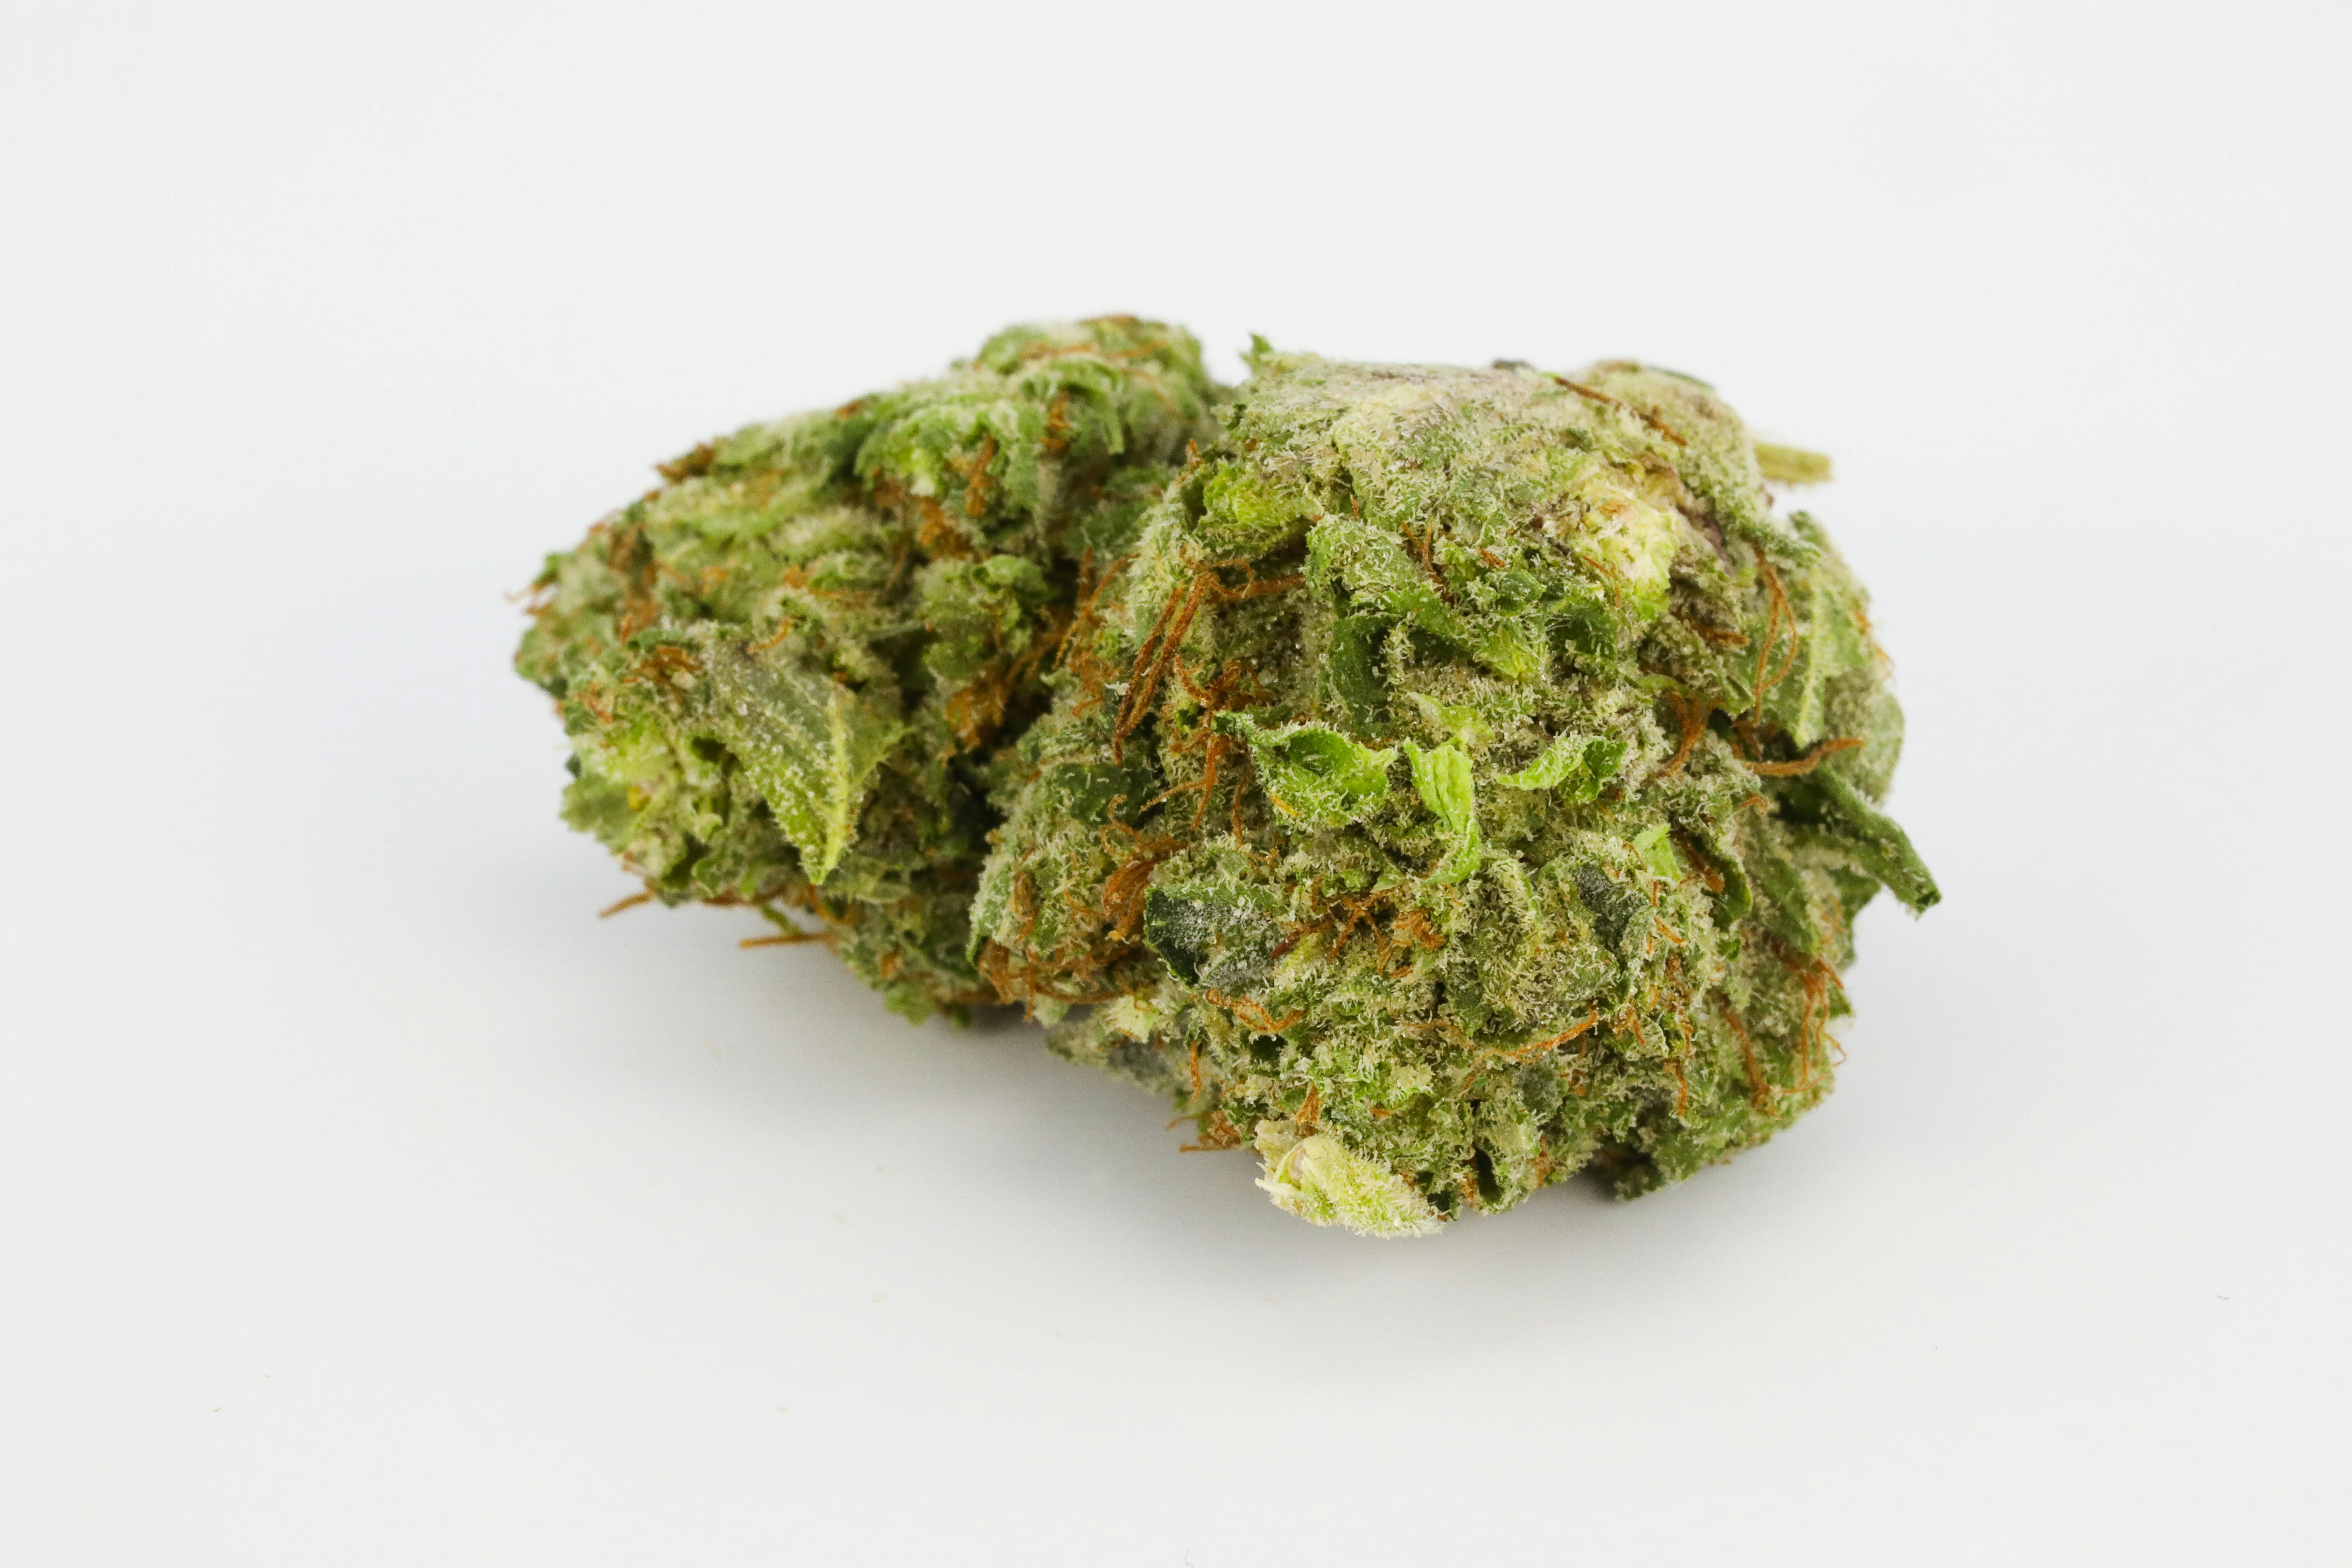 0G8A3214 Souches de Landrace : Tout ce que vous devez savoir sur les souches de cannabis Landrace